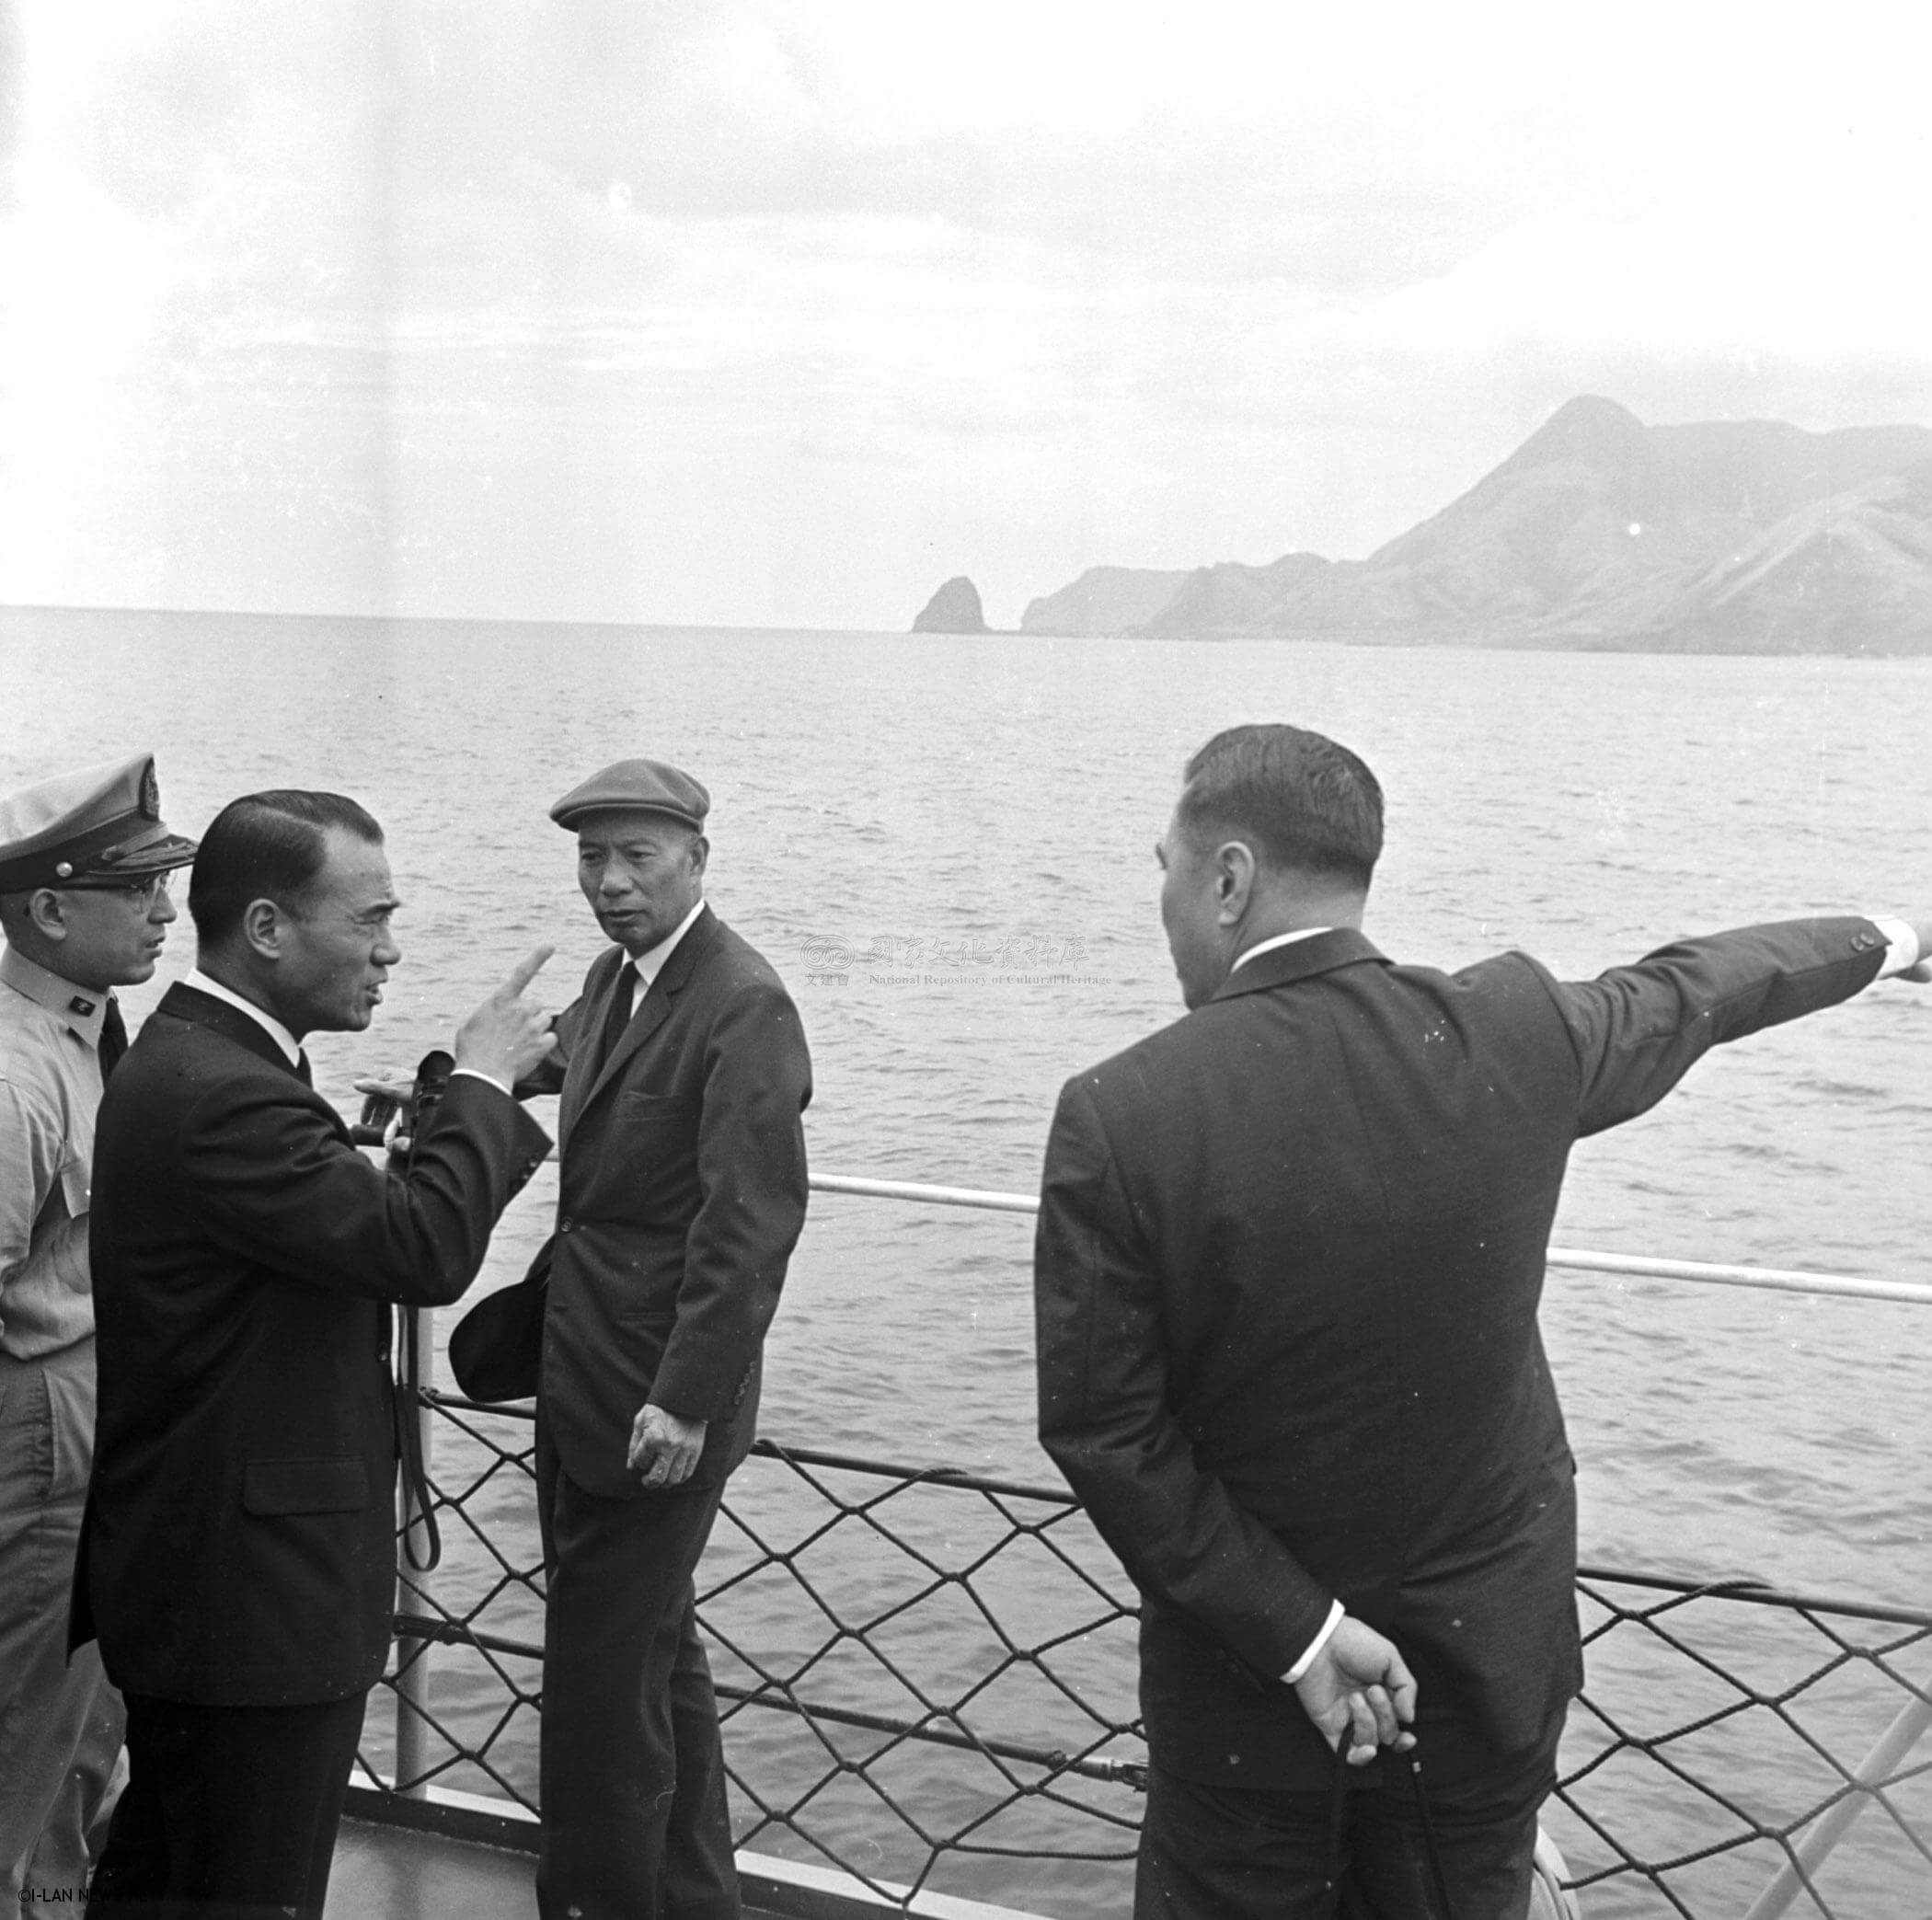 54年9月30日-台灣省主席黃杰巡視龜山島-國家文化資料庫提供。